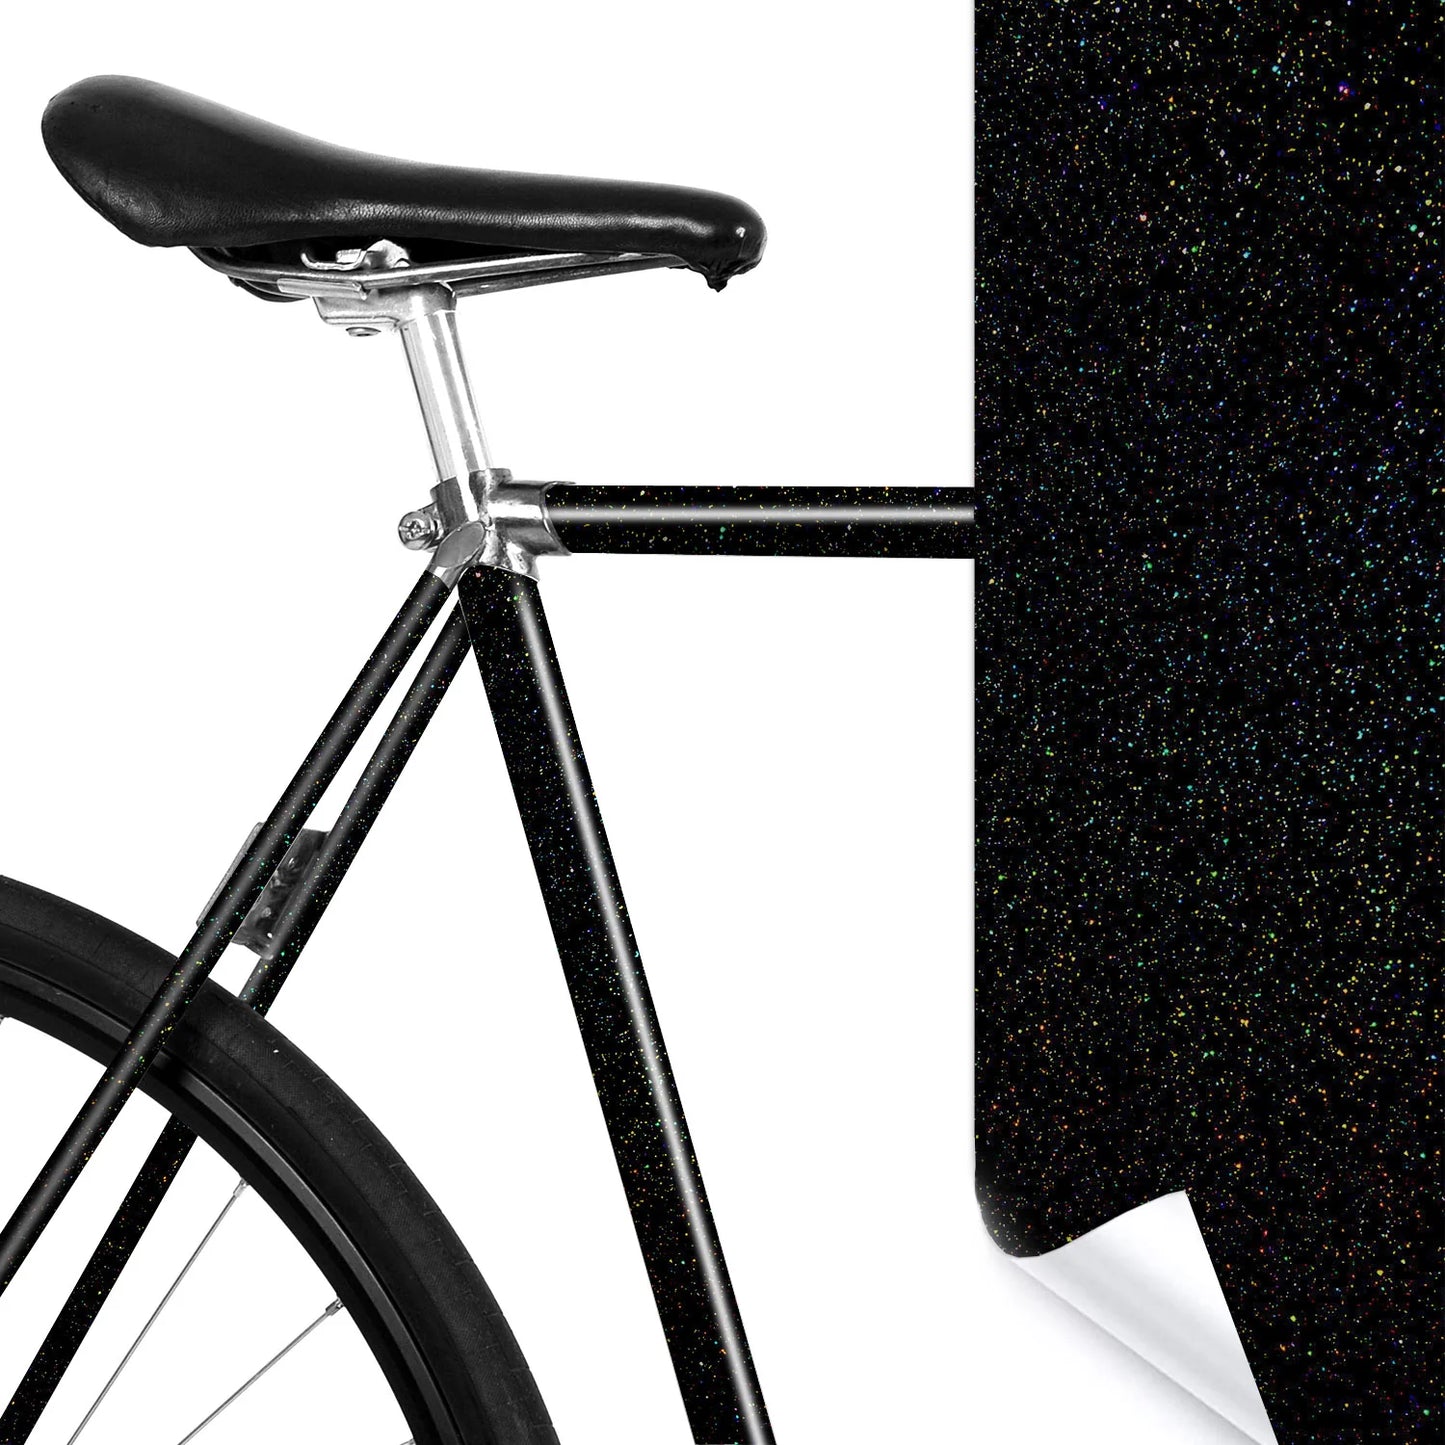 Glänzende Fahrradrahmenschutzfolie - für mehr Individualität und